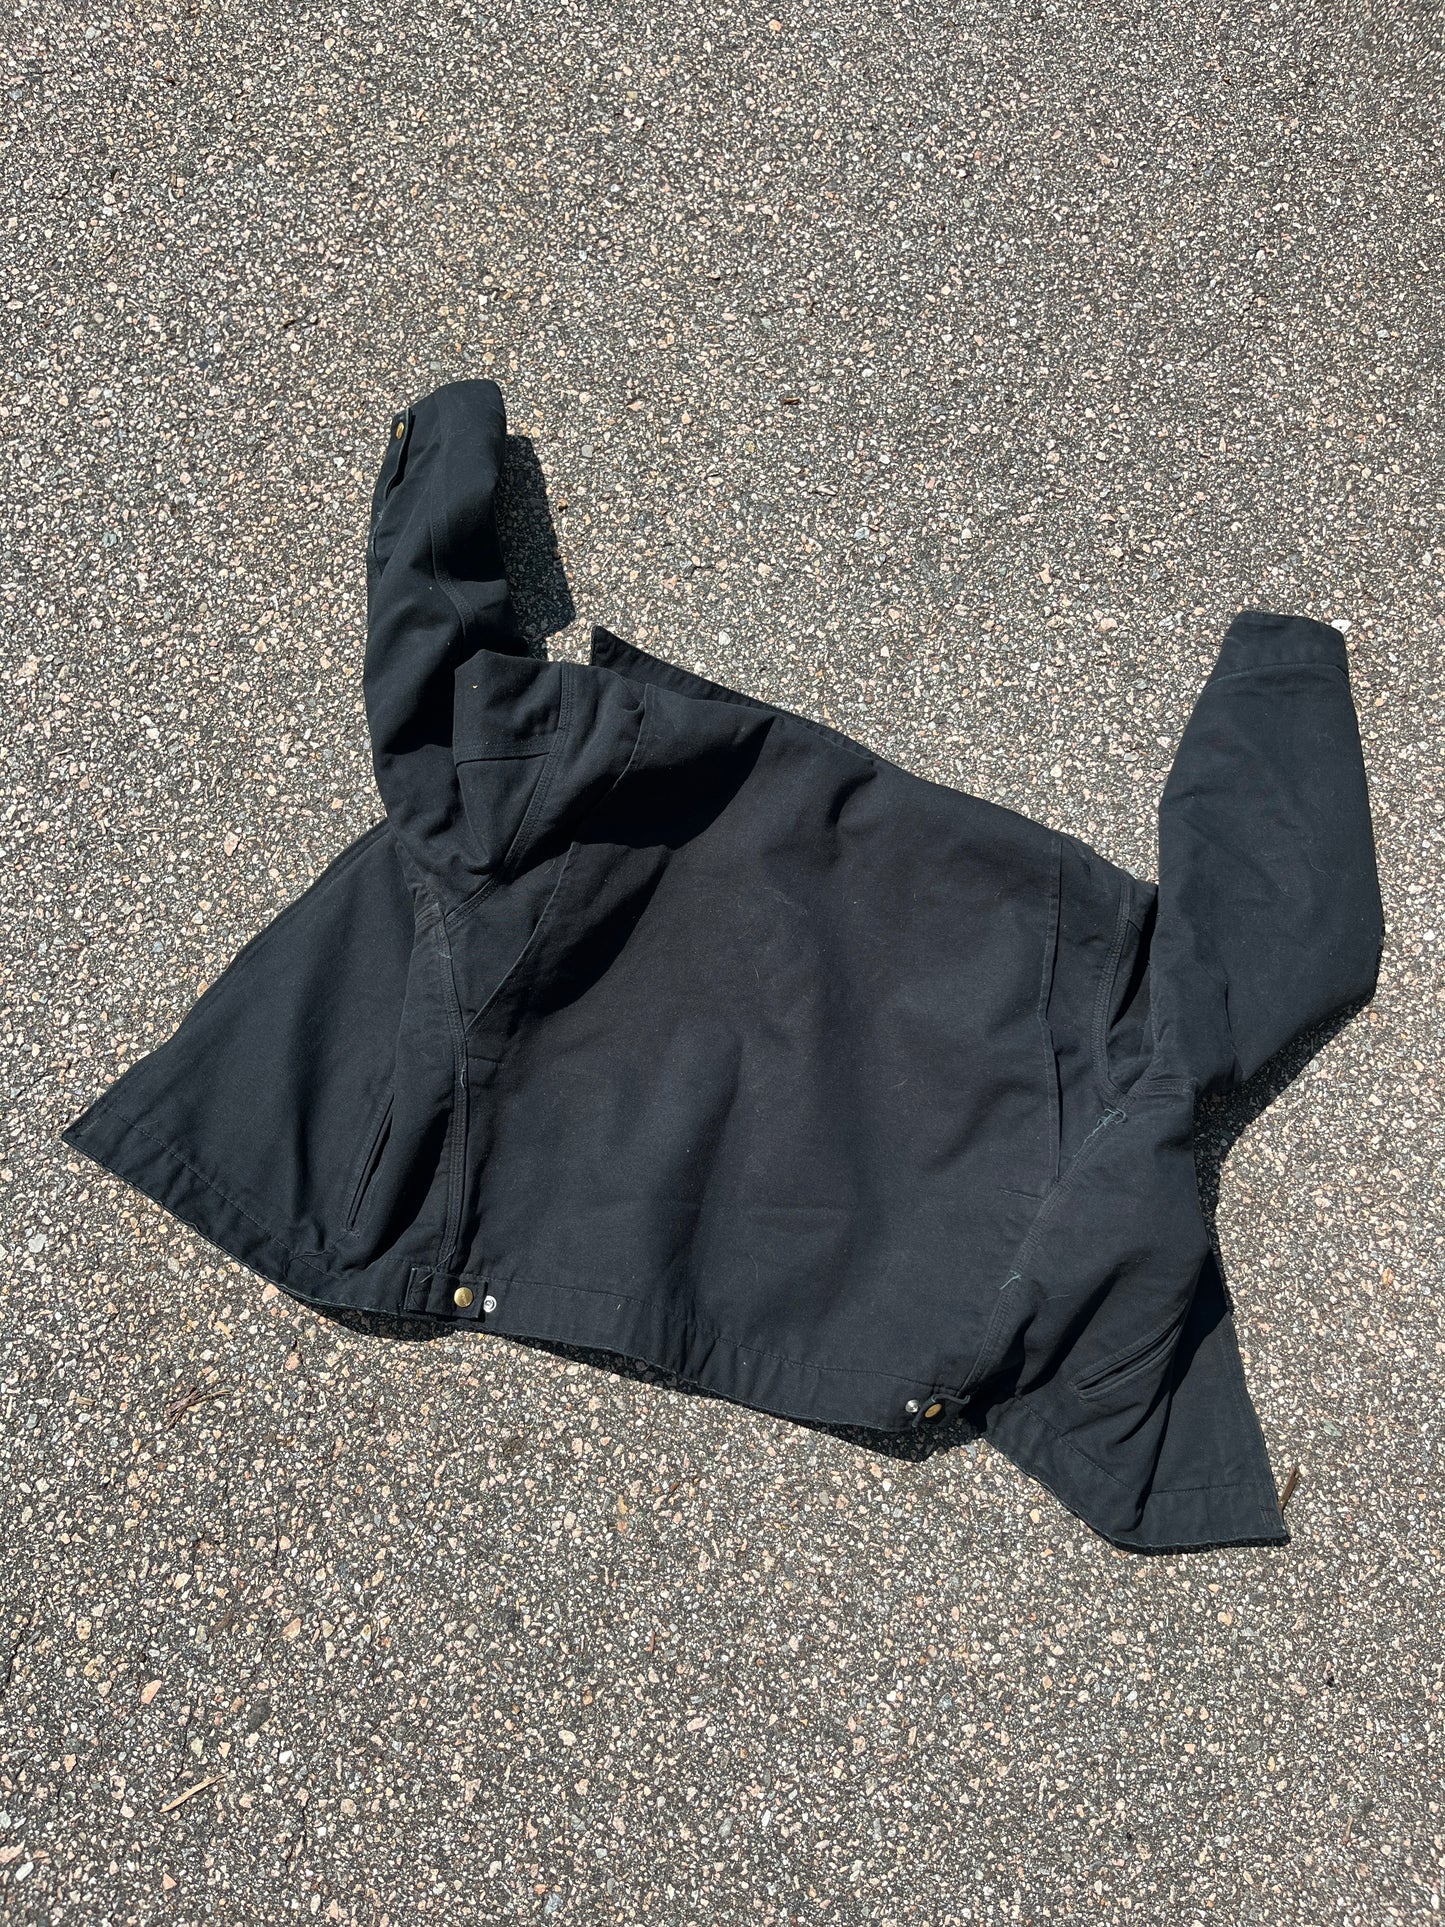 Faded Black Carhartt Detroit Jacket - Medium